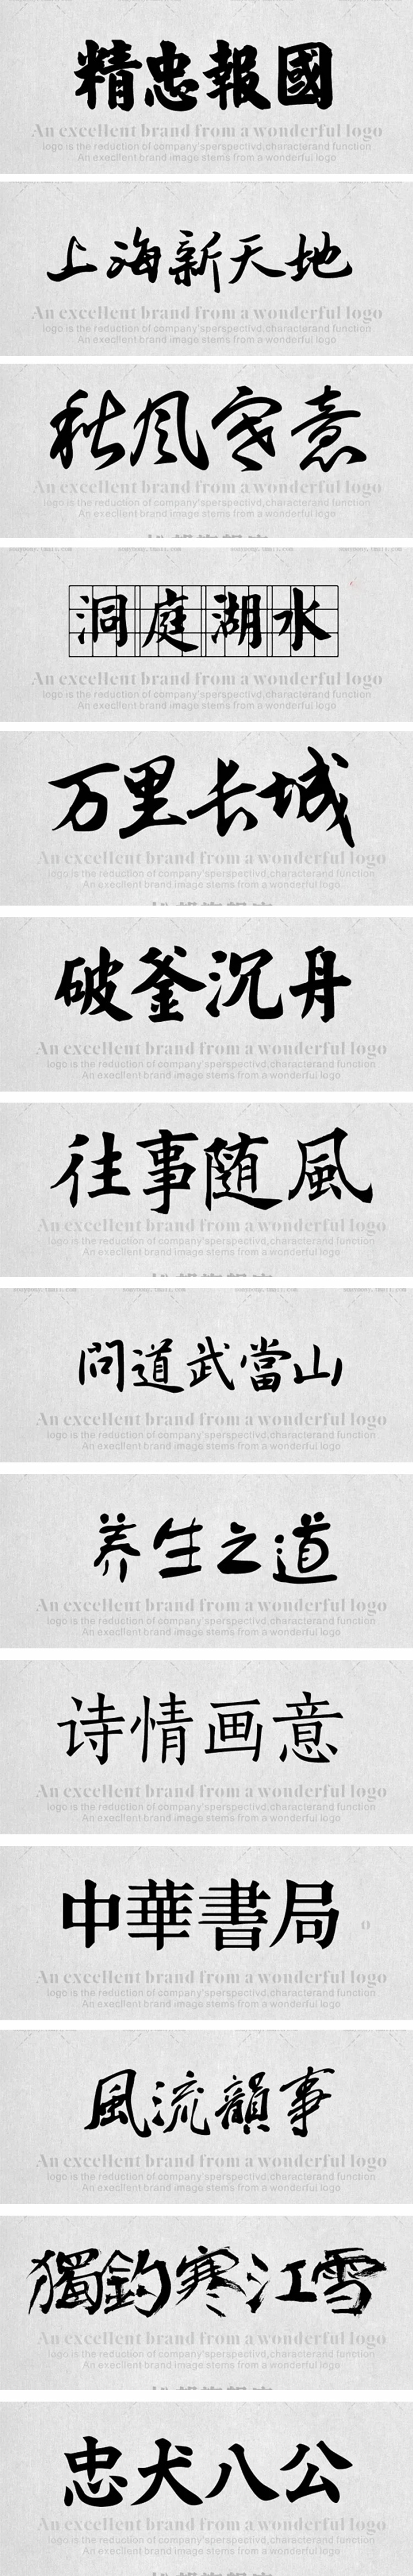 350款书法字体ps古风字体包中文字体库下载设计中国风书法毛笔代找字体素材 mac 图片素材 第3张